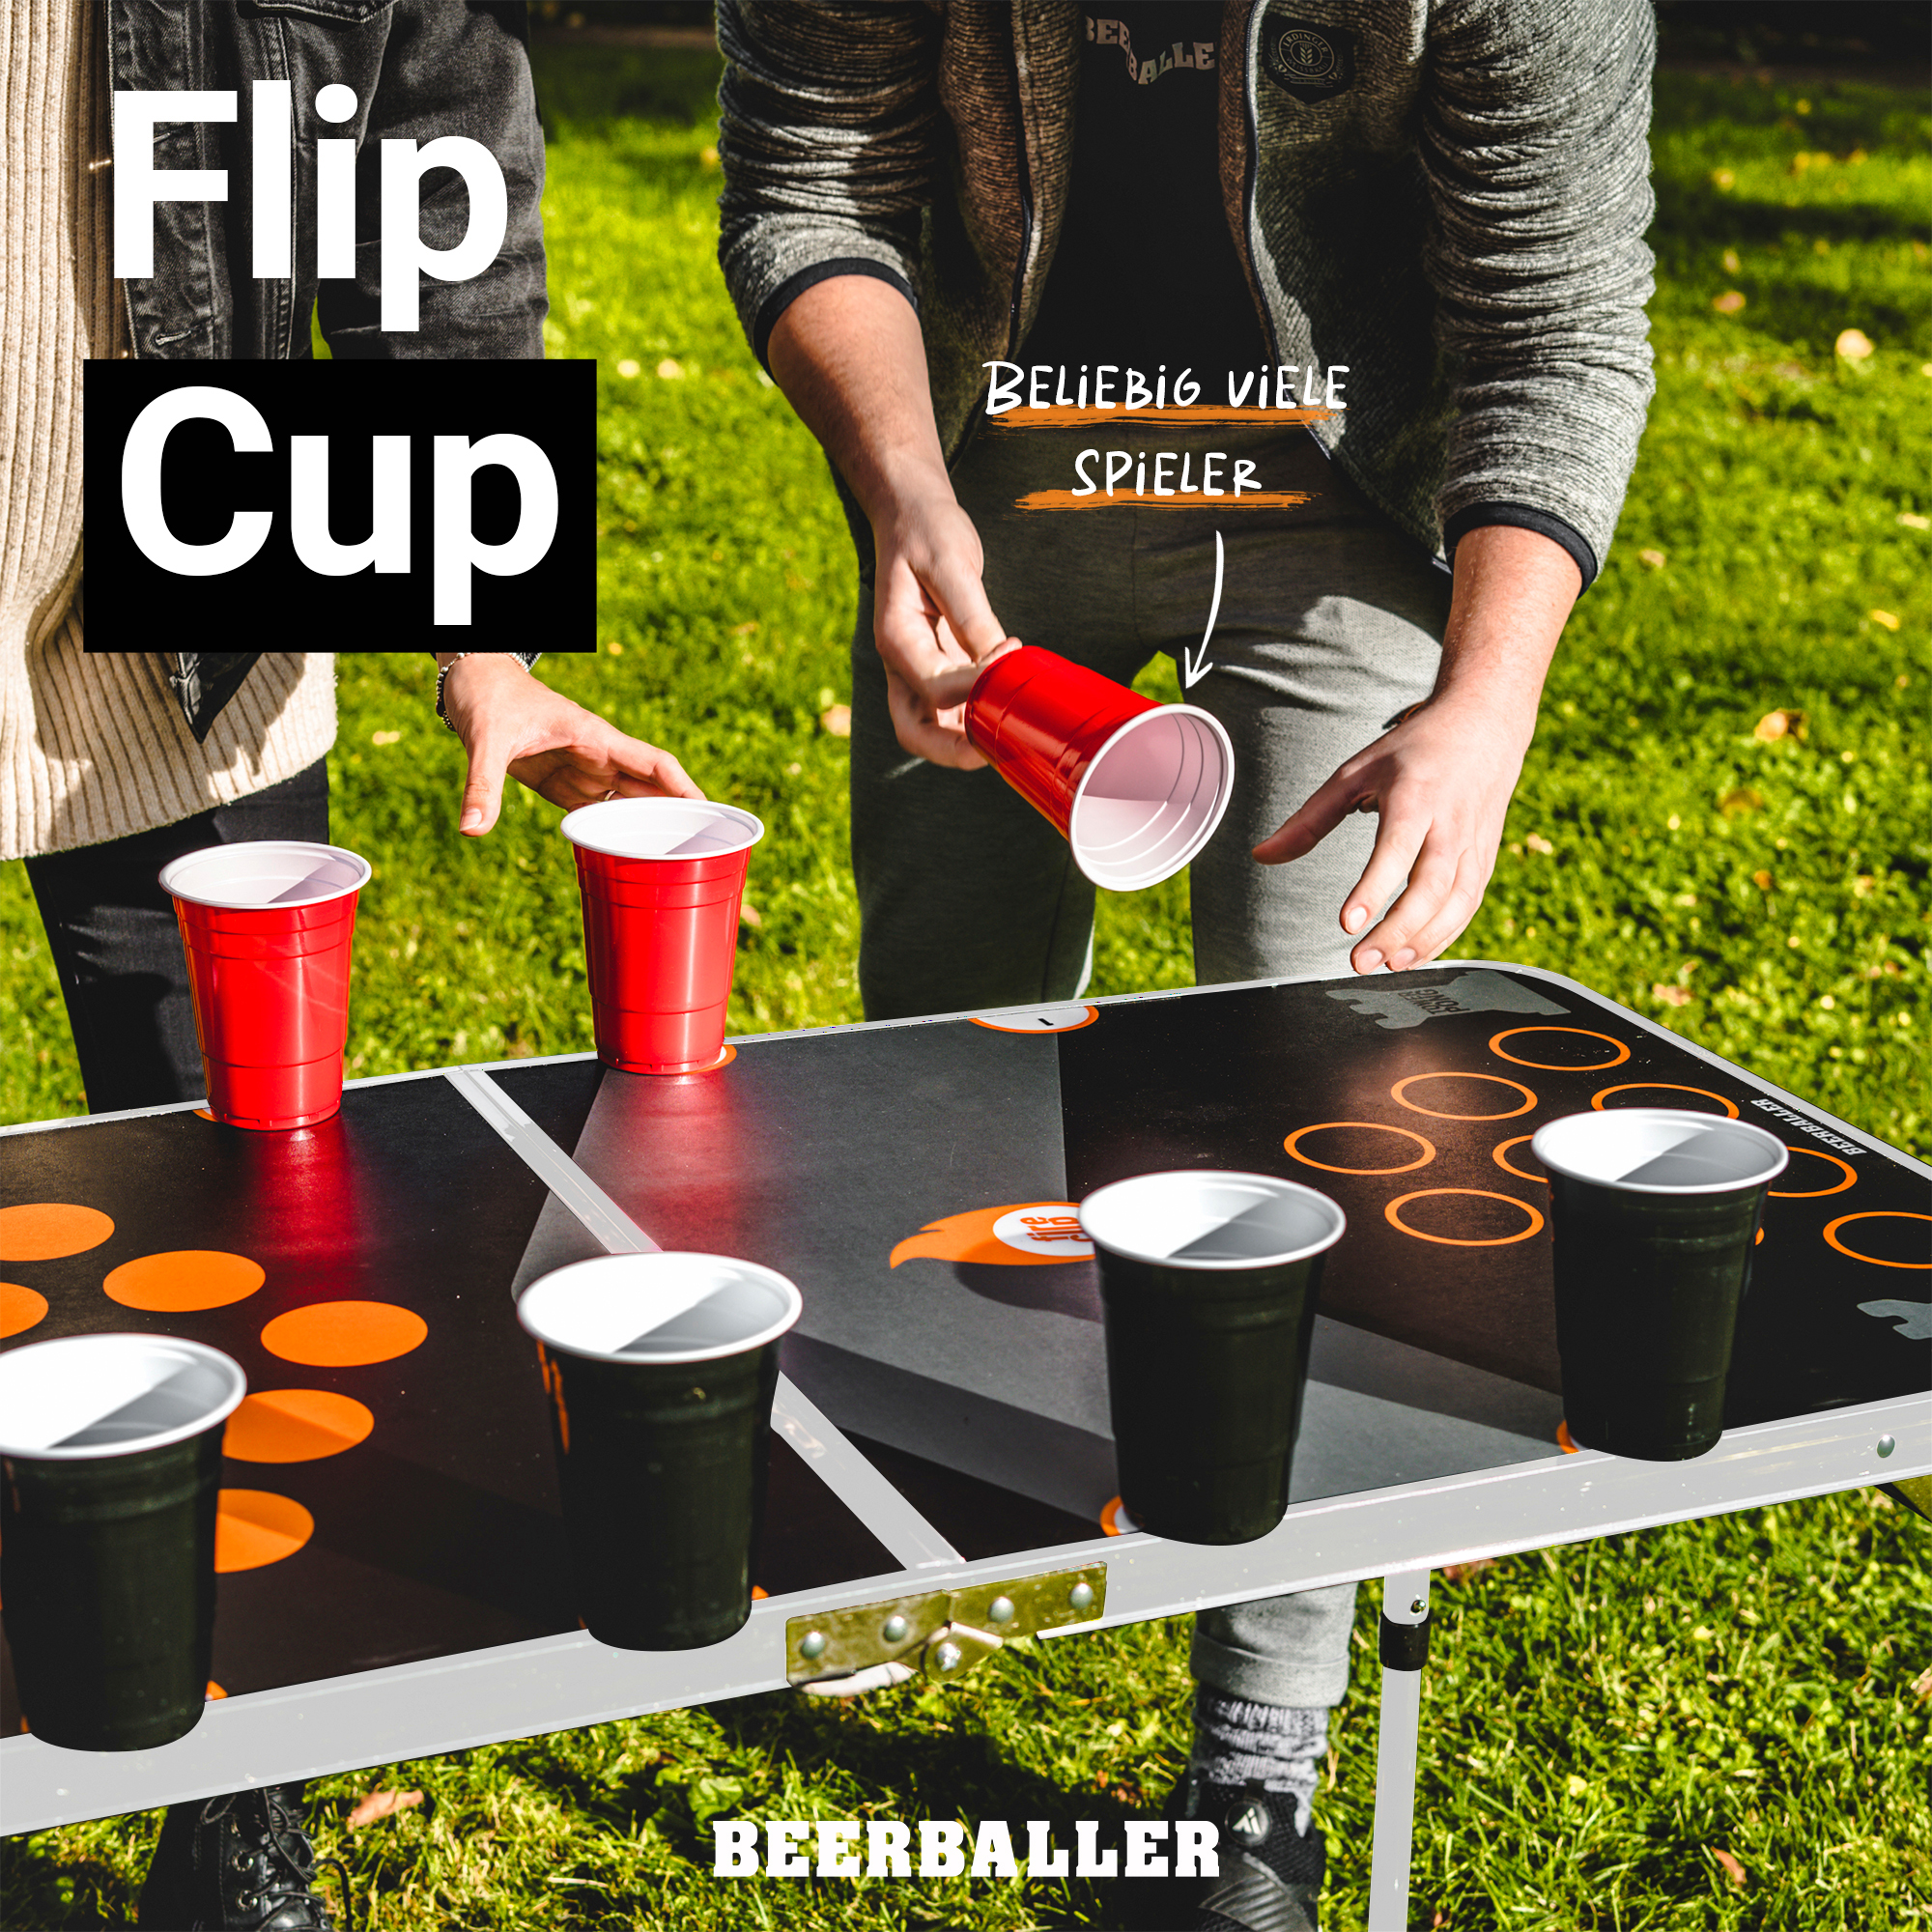 Équipez-vous pour le jeu du beer pong !